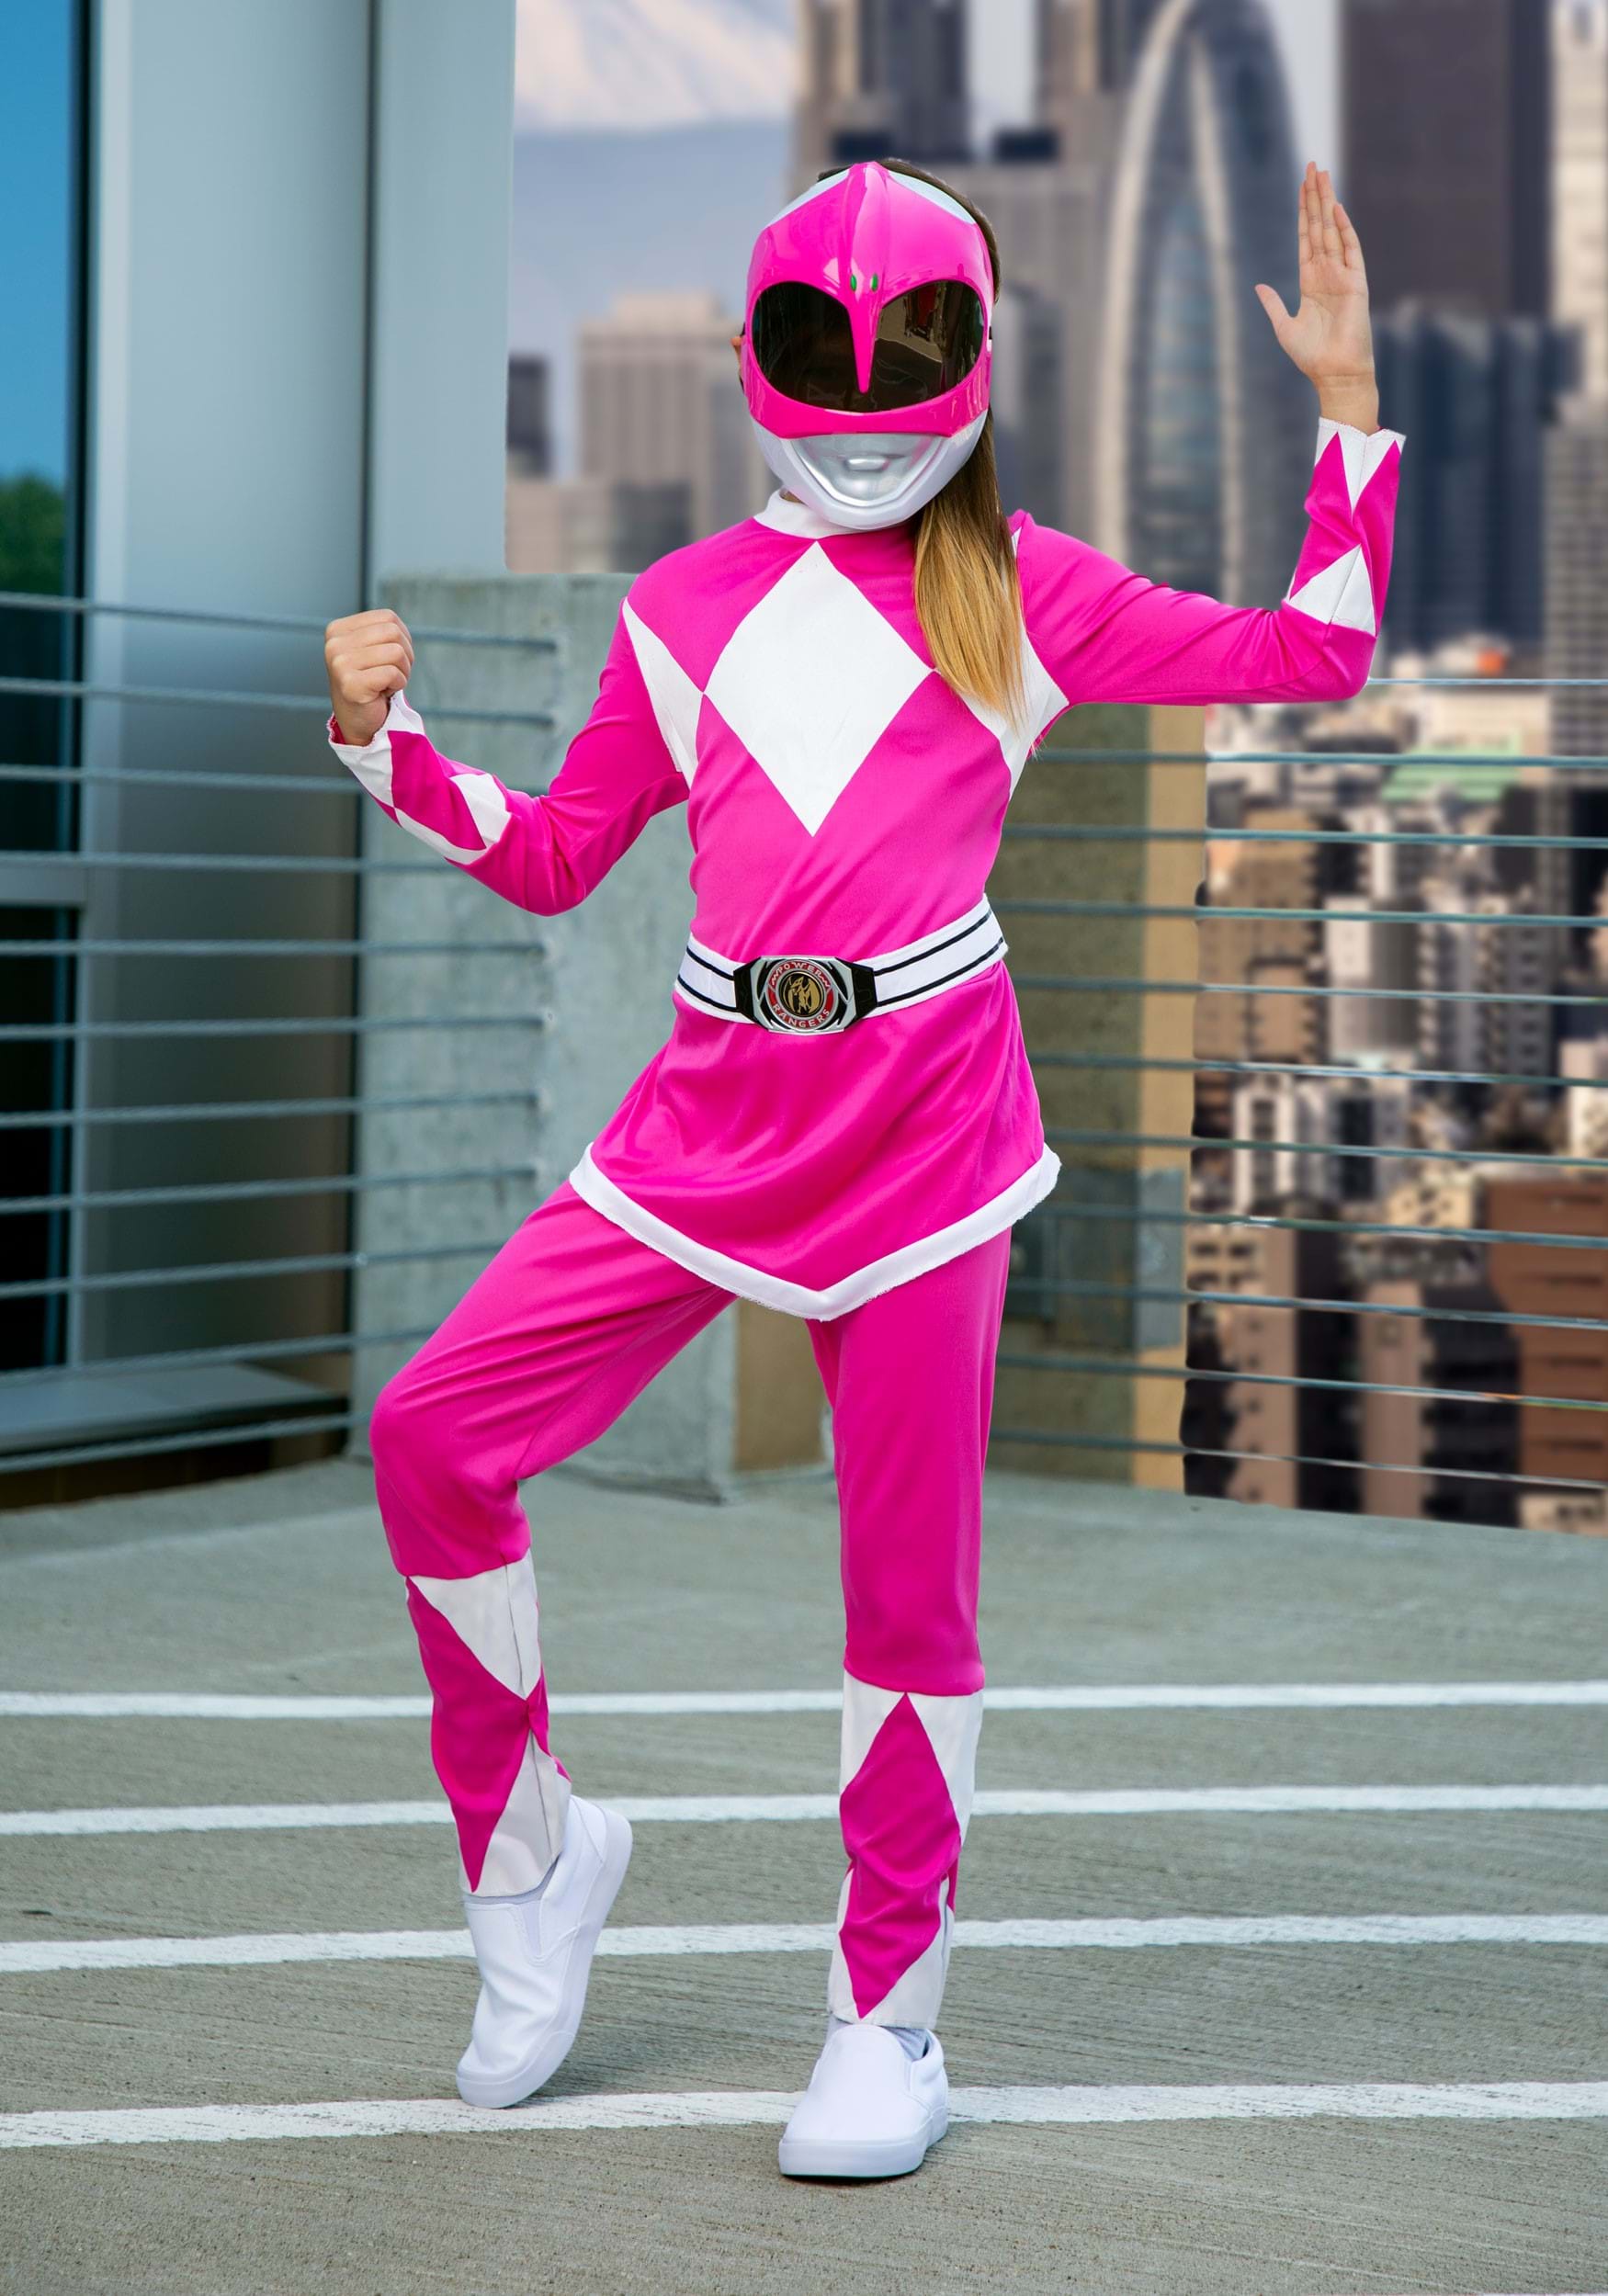 Power Rangers Girls Pink Ranger Costume Sumber : www.halloweencostumes.com.